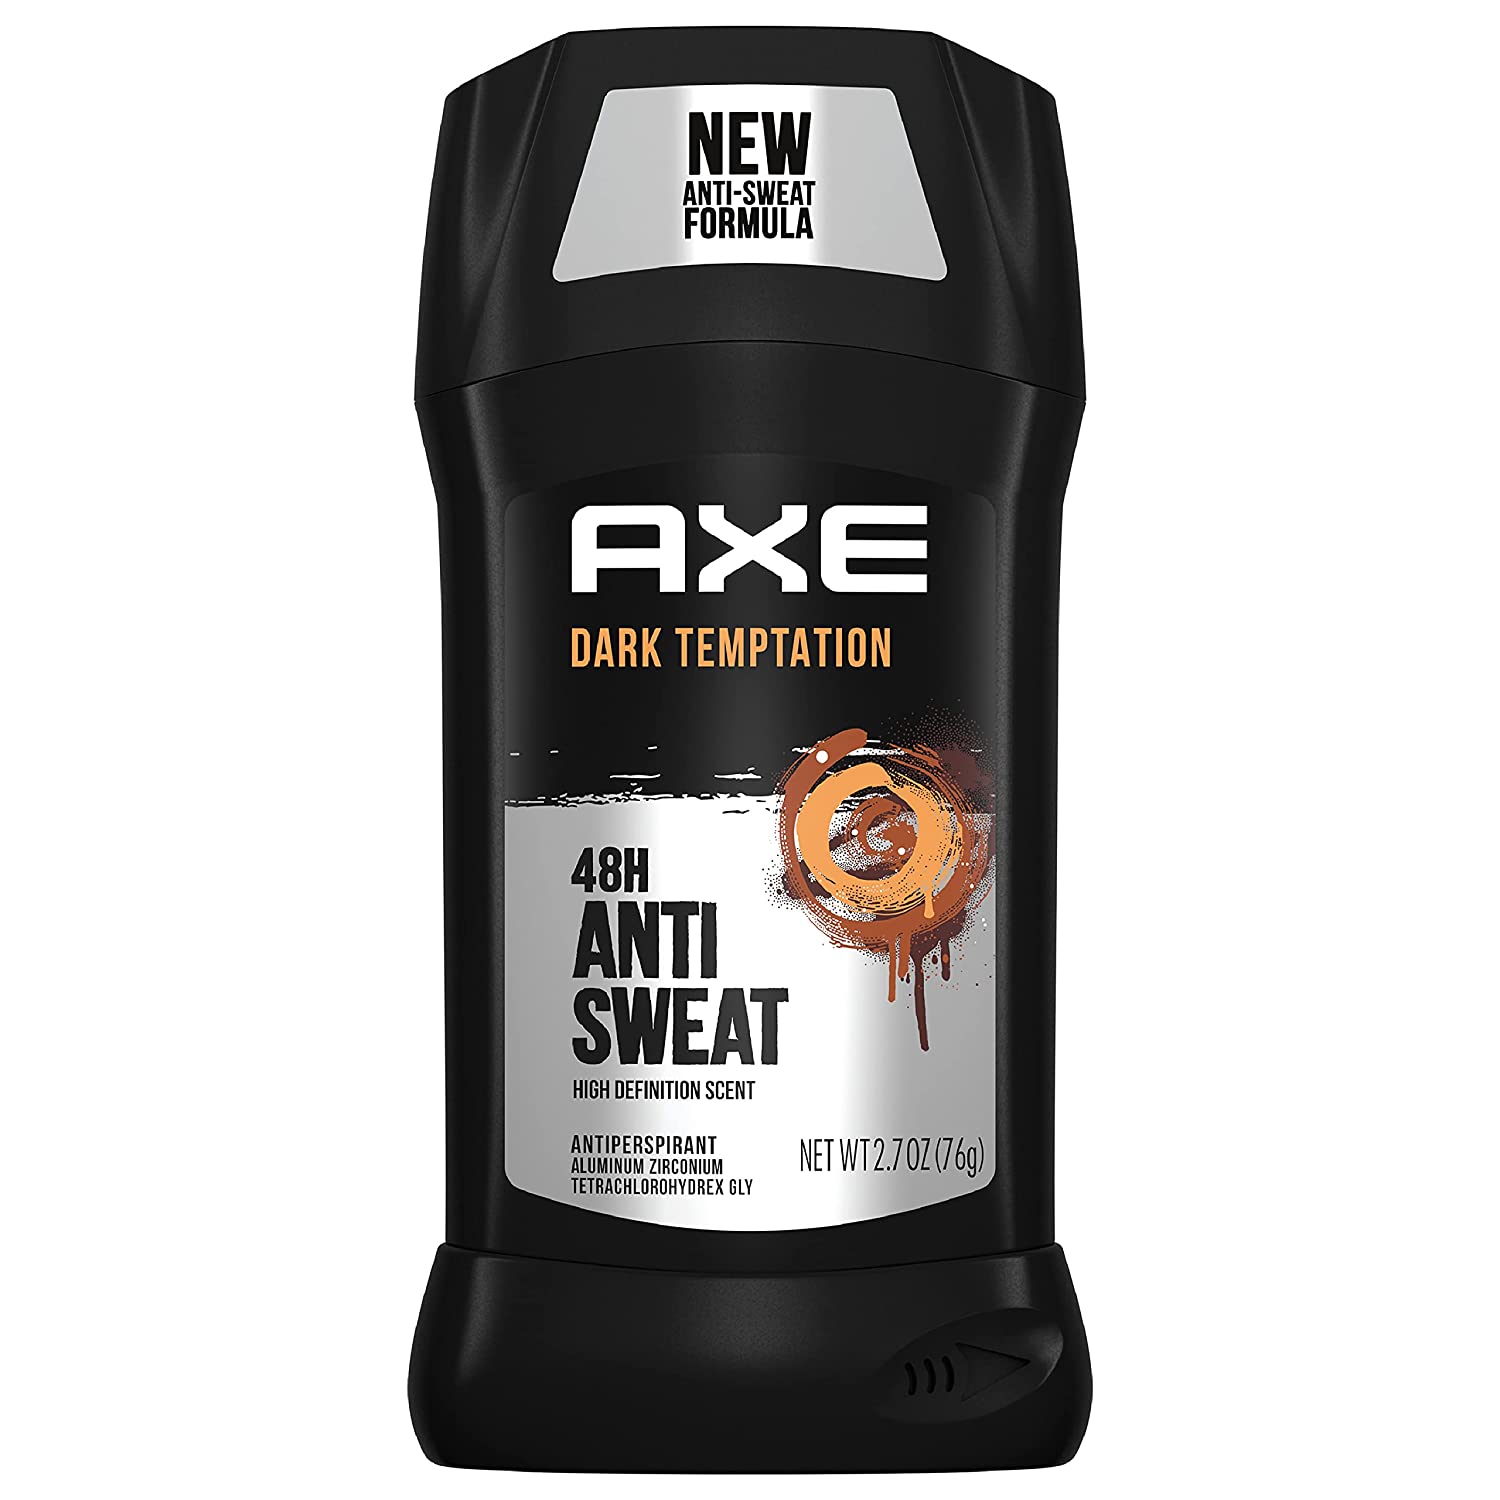 Axe Dark Temptation 48H Anti Sweat (76gm) Axe